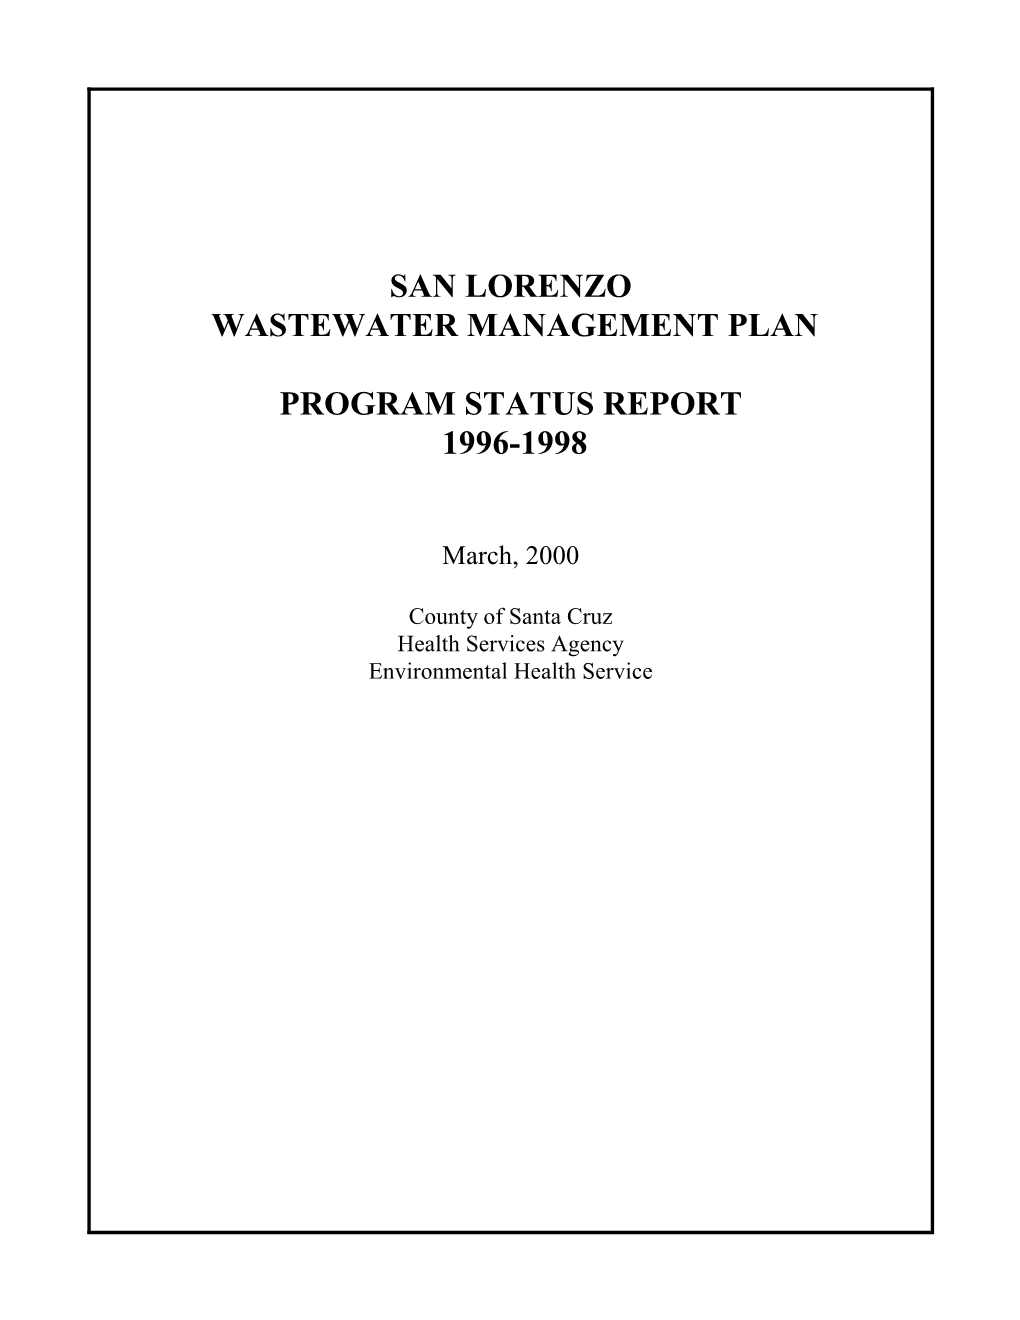 San Lorenzo Wastewater Management Plan Program Status Report, 1996-1998